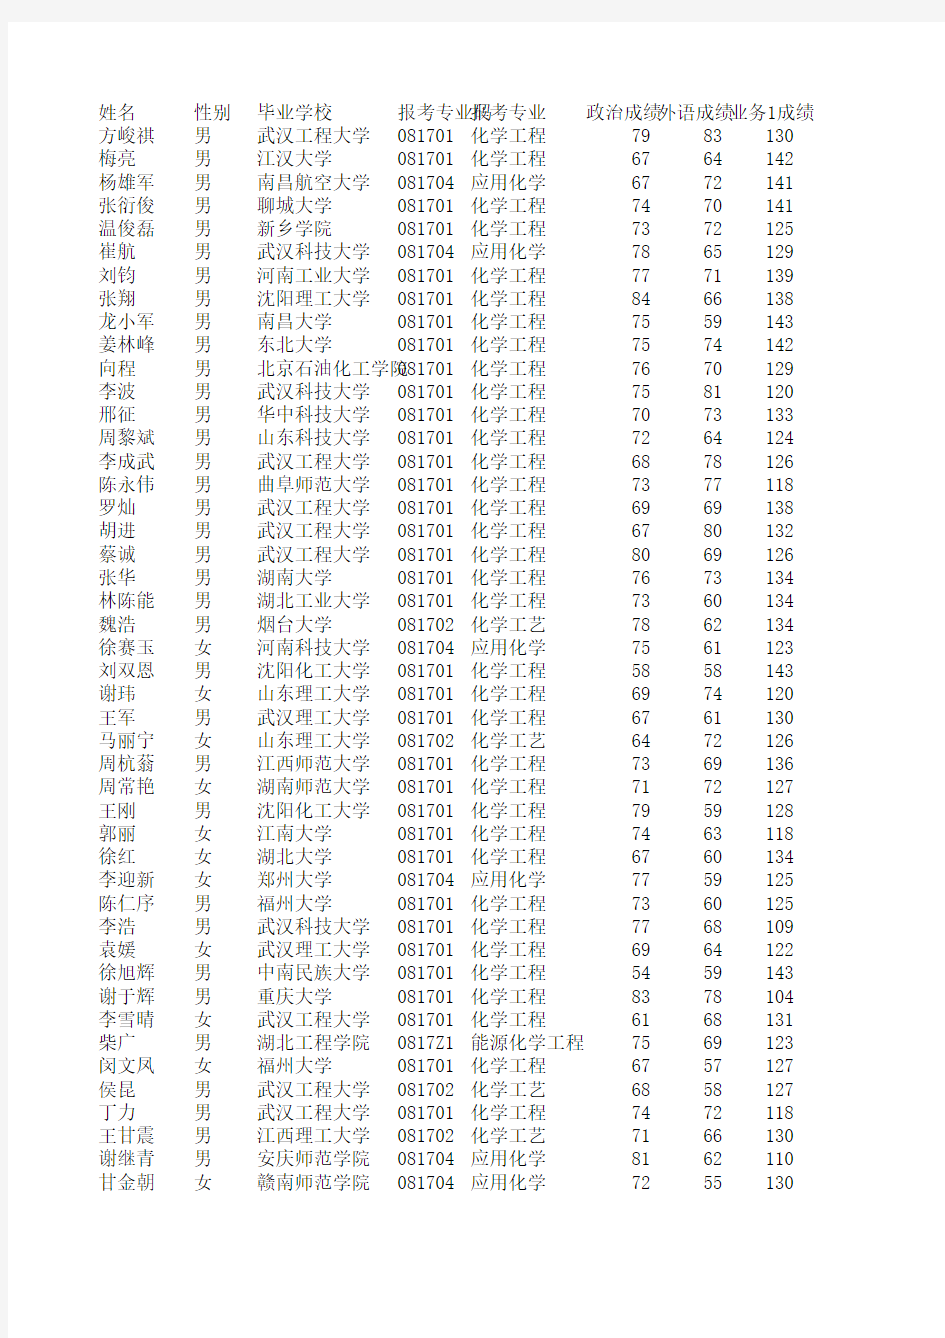 2014华南理工大学化学化工考研初试排名表